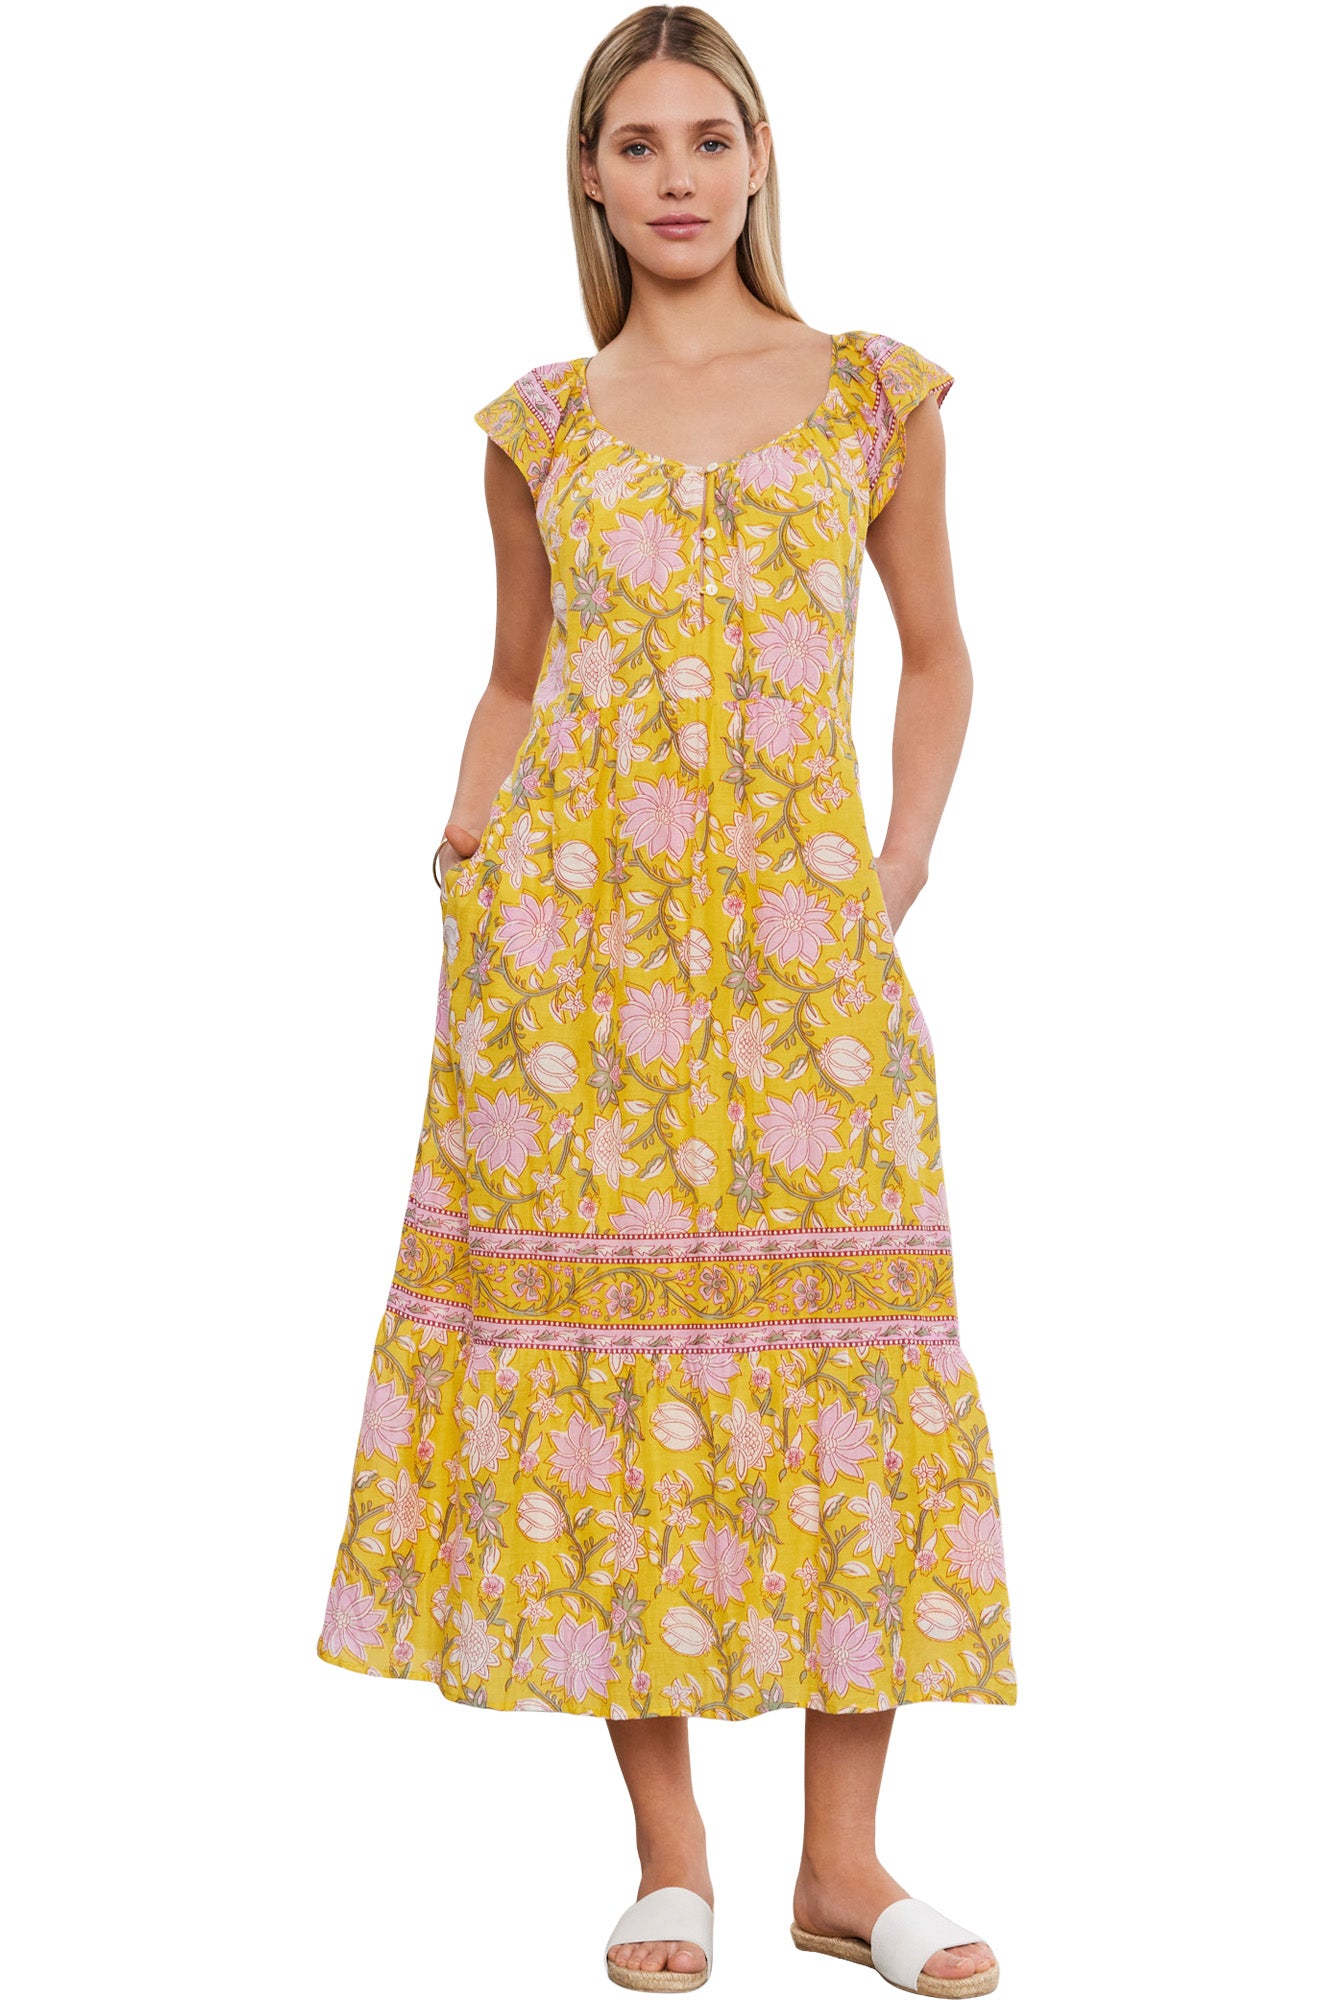 Velvet Jazlyn Sleeveless Dress in Sunburst